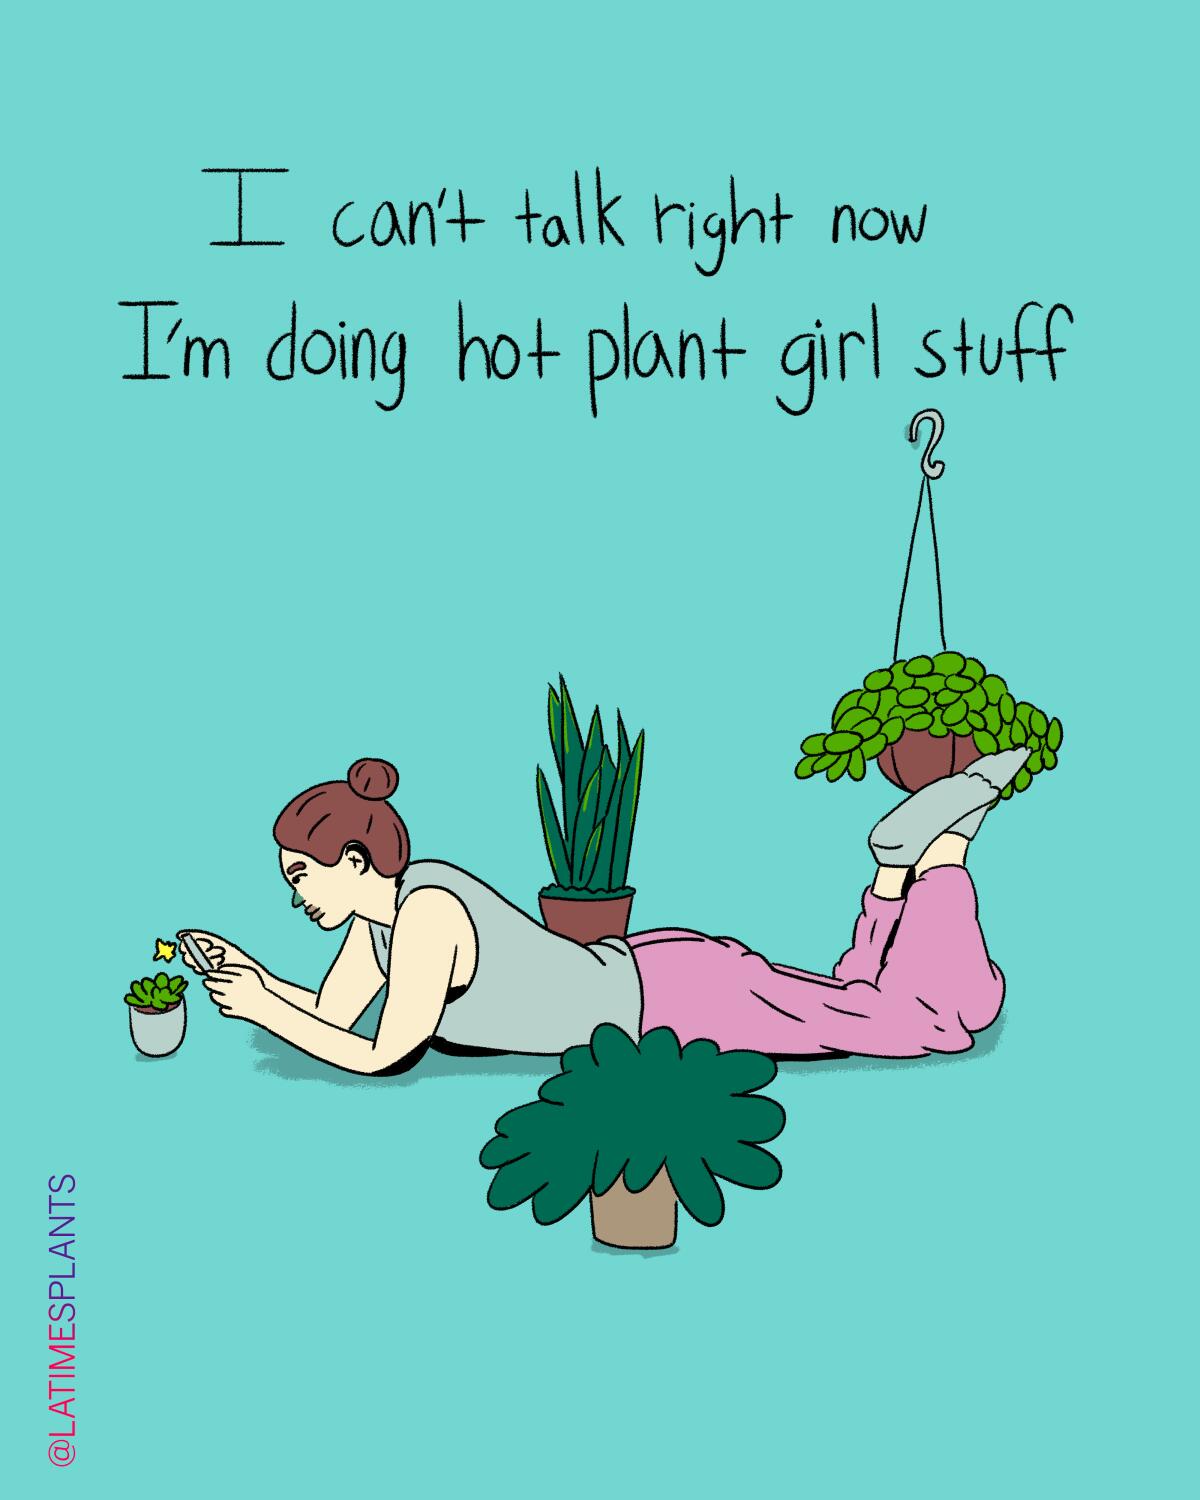 Doing hot plant girl stuff